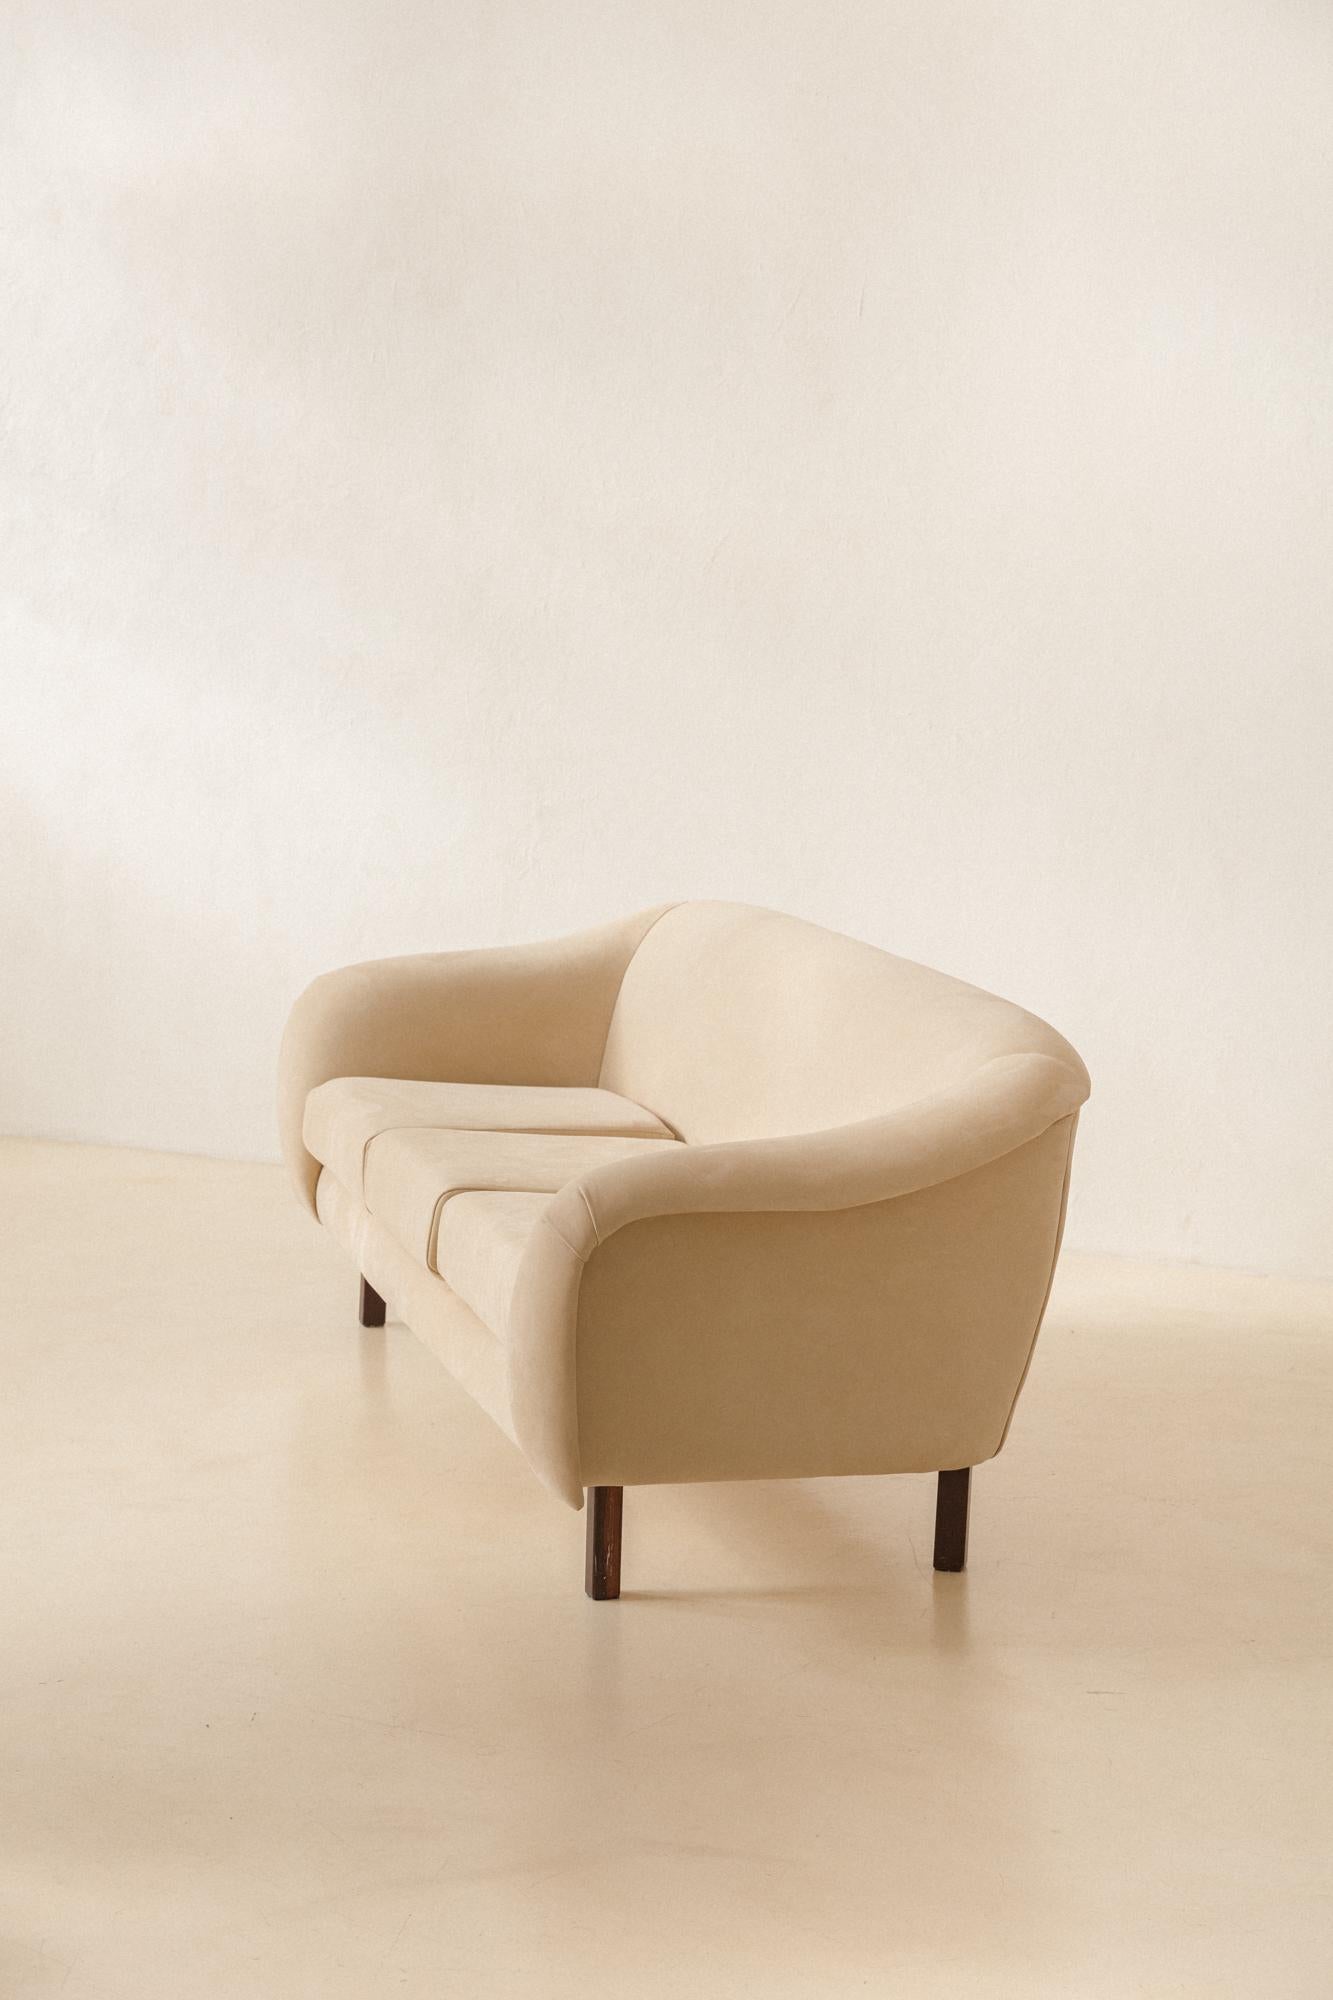 Joaquim Tenreiro (1906-1992) entwarf und produzierte das geschwungene Sofa um 1960 und vermarktete es in seinem Unternehmen Tenreiro Móveis e Decorações - mit Geschäften in São Paulo und Rio de Janeiro.

Der Holzrahmen besteht aus einem